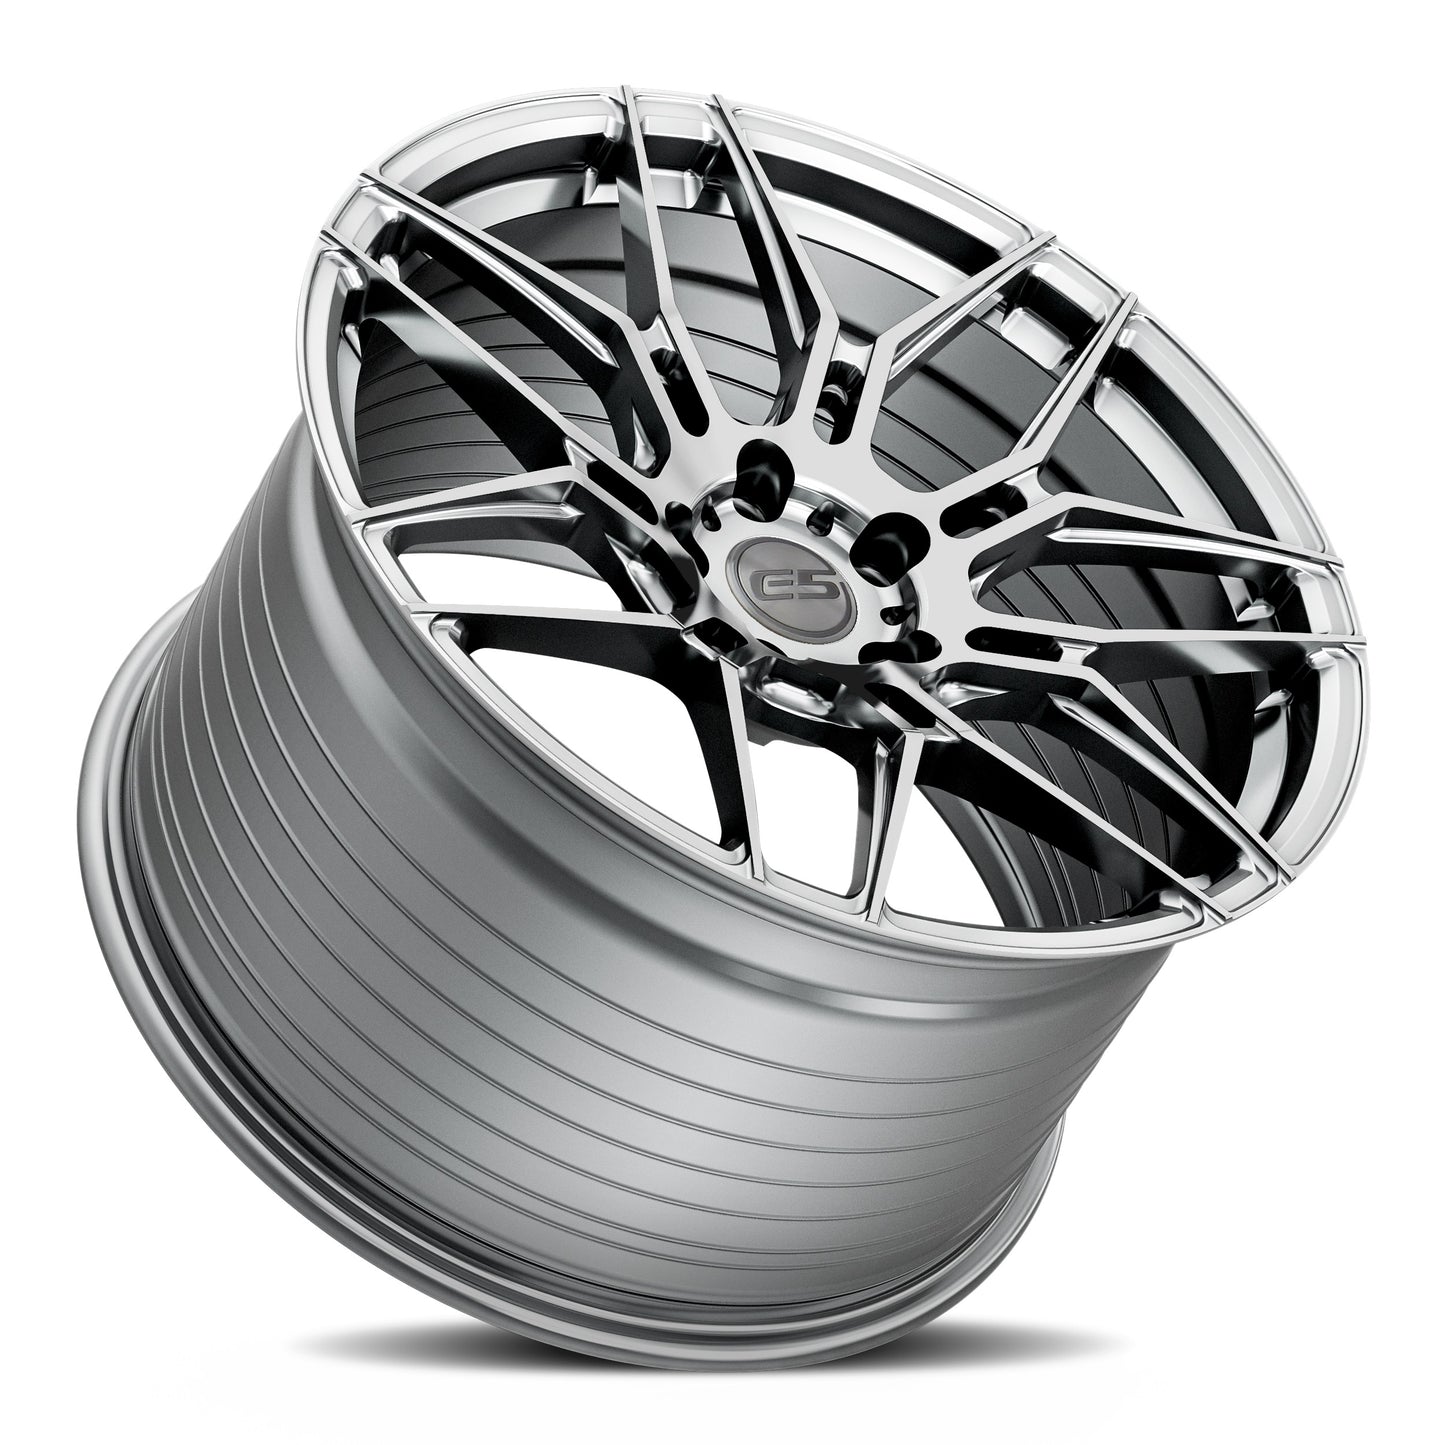 C8 Corvette E5 Speedway Wheel - Brushed Titanium (concave)